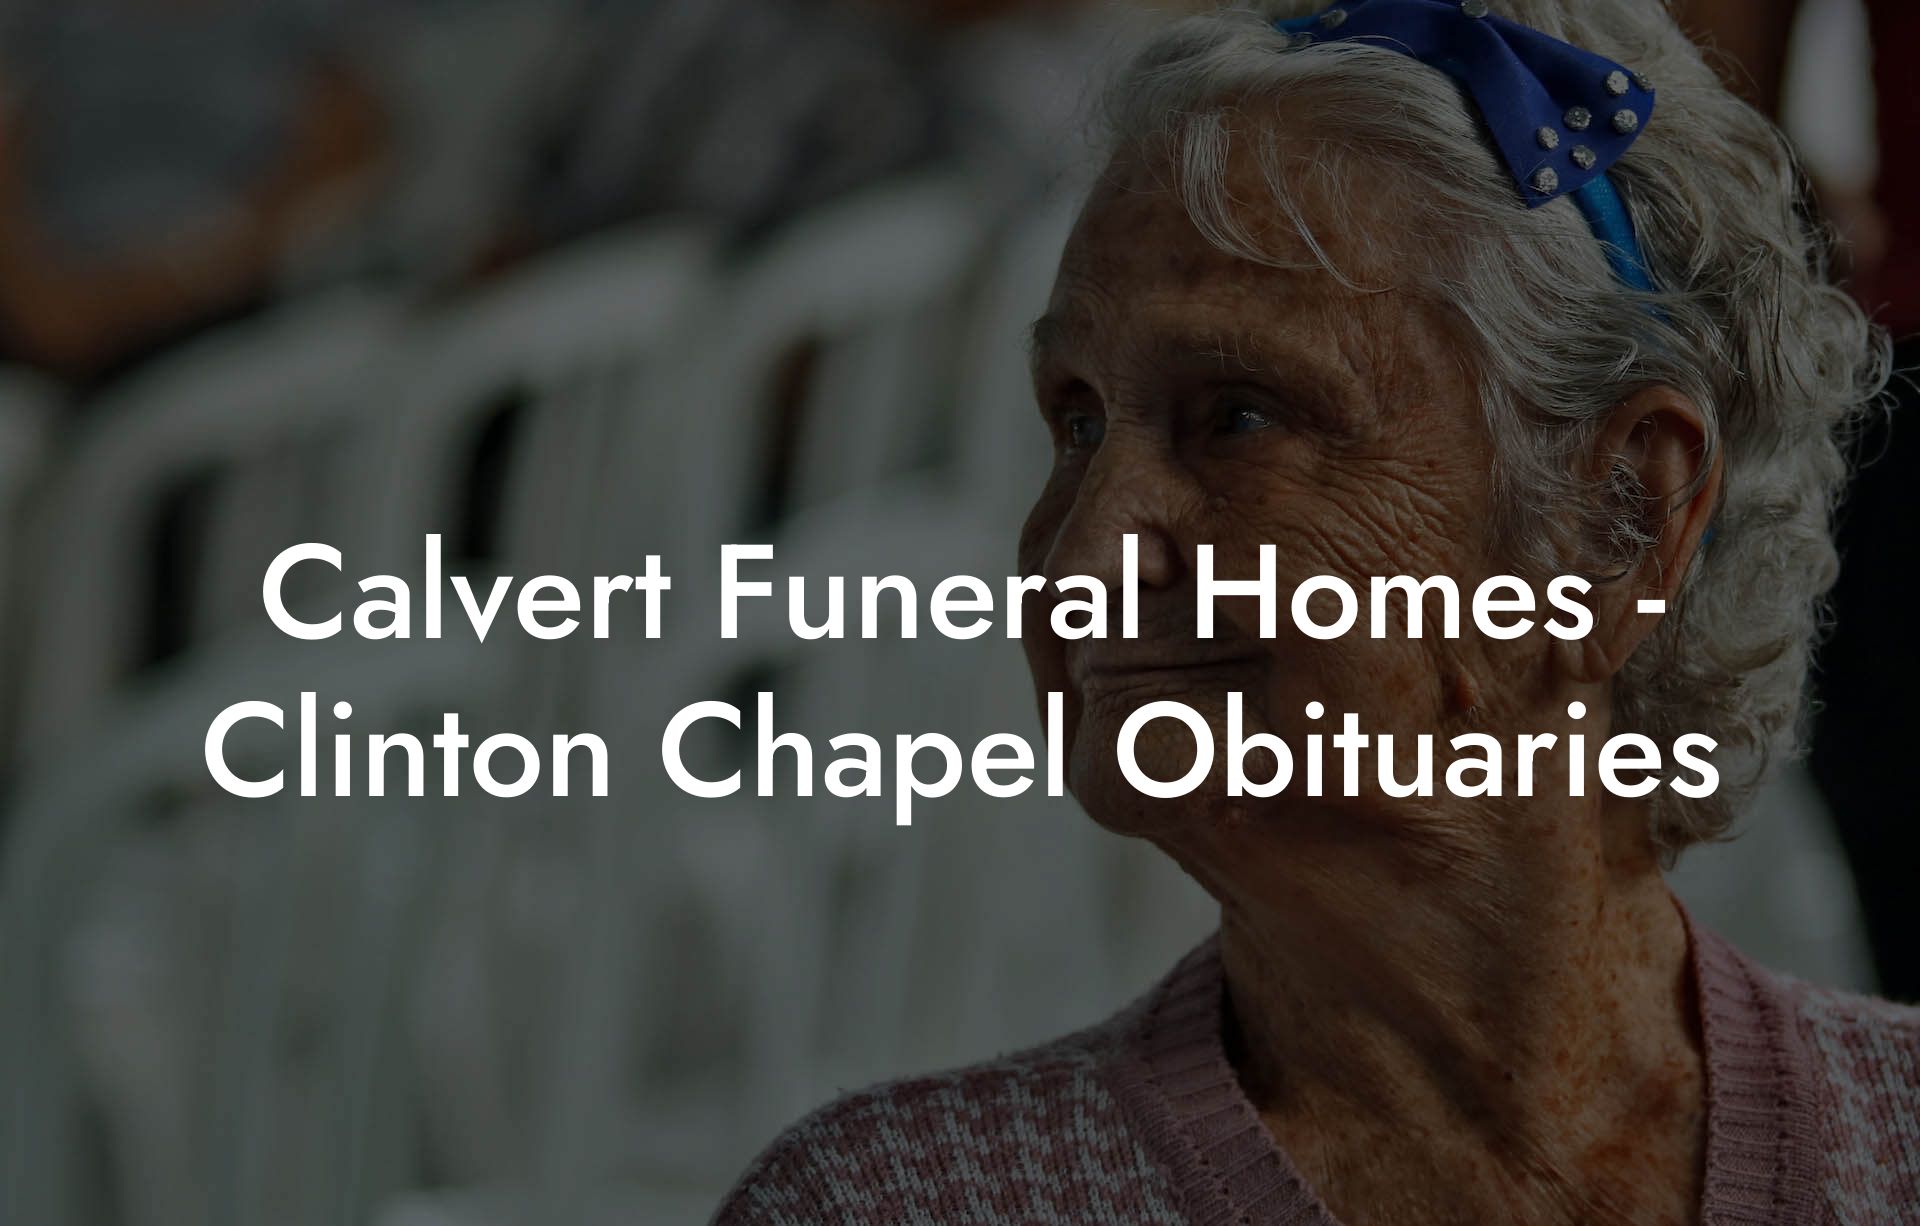 Calvert Funeral Homes - Clinton Chapel Obituaries